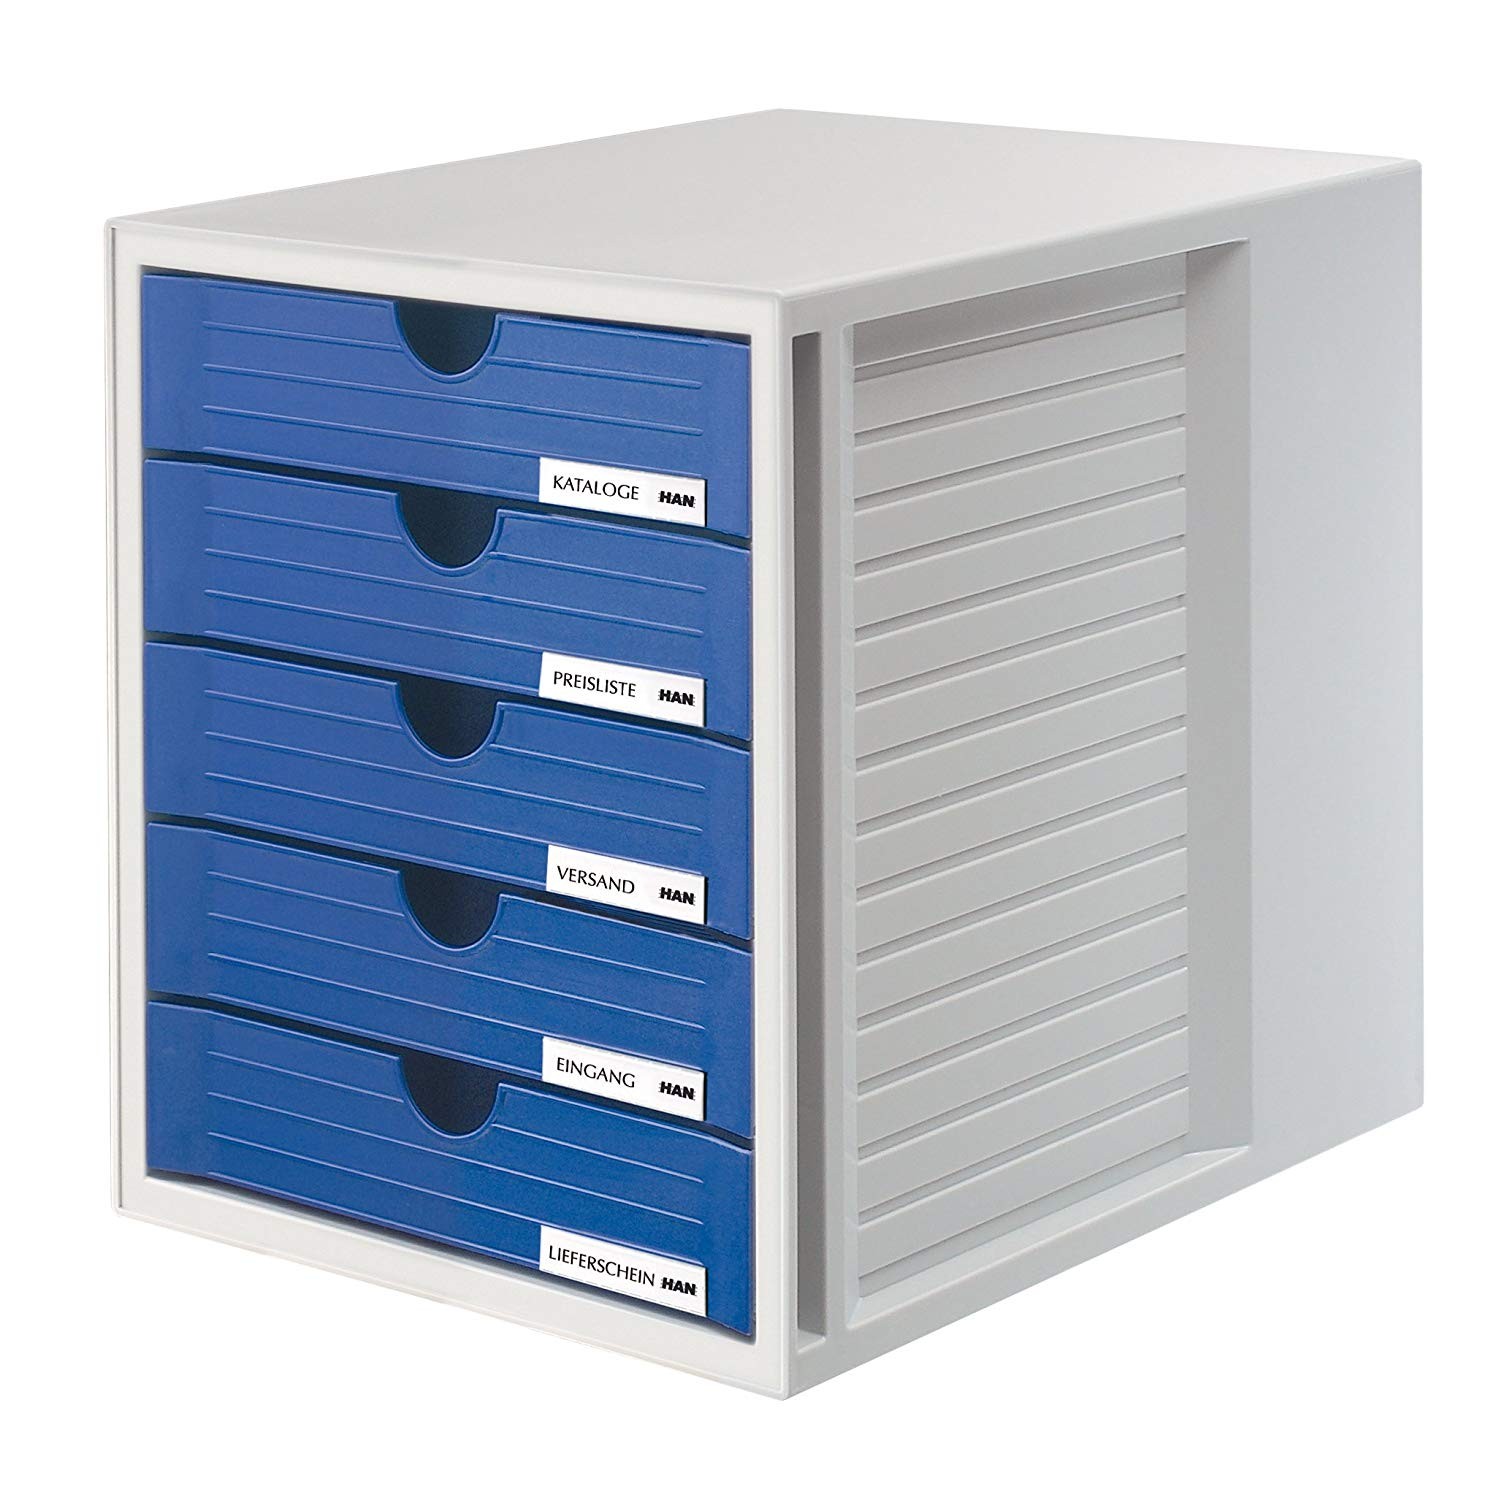 Suport plastic cu 5 sertare pentru documente, HAN - gri deschis - sertare albastre